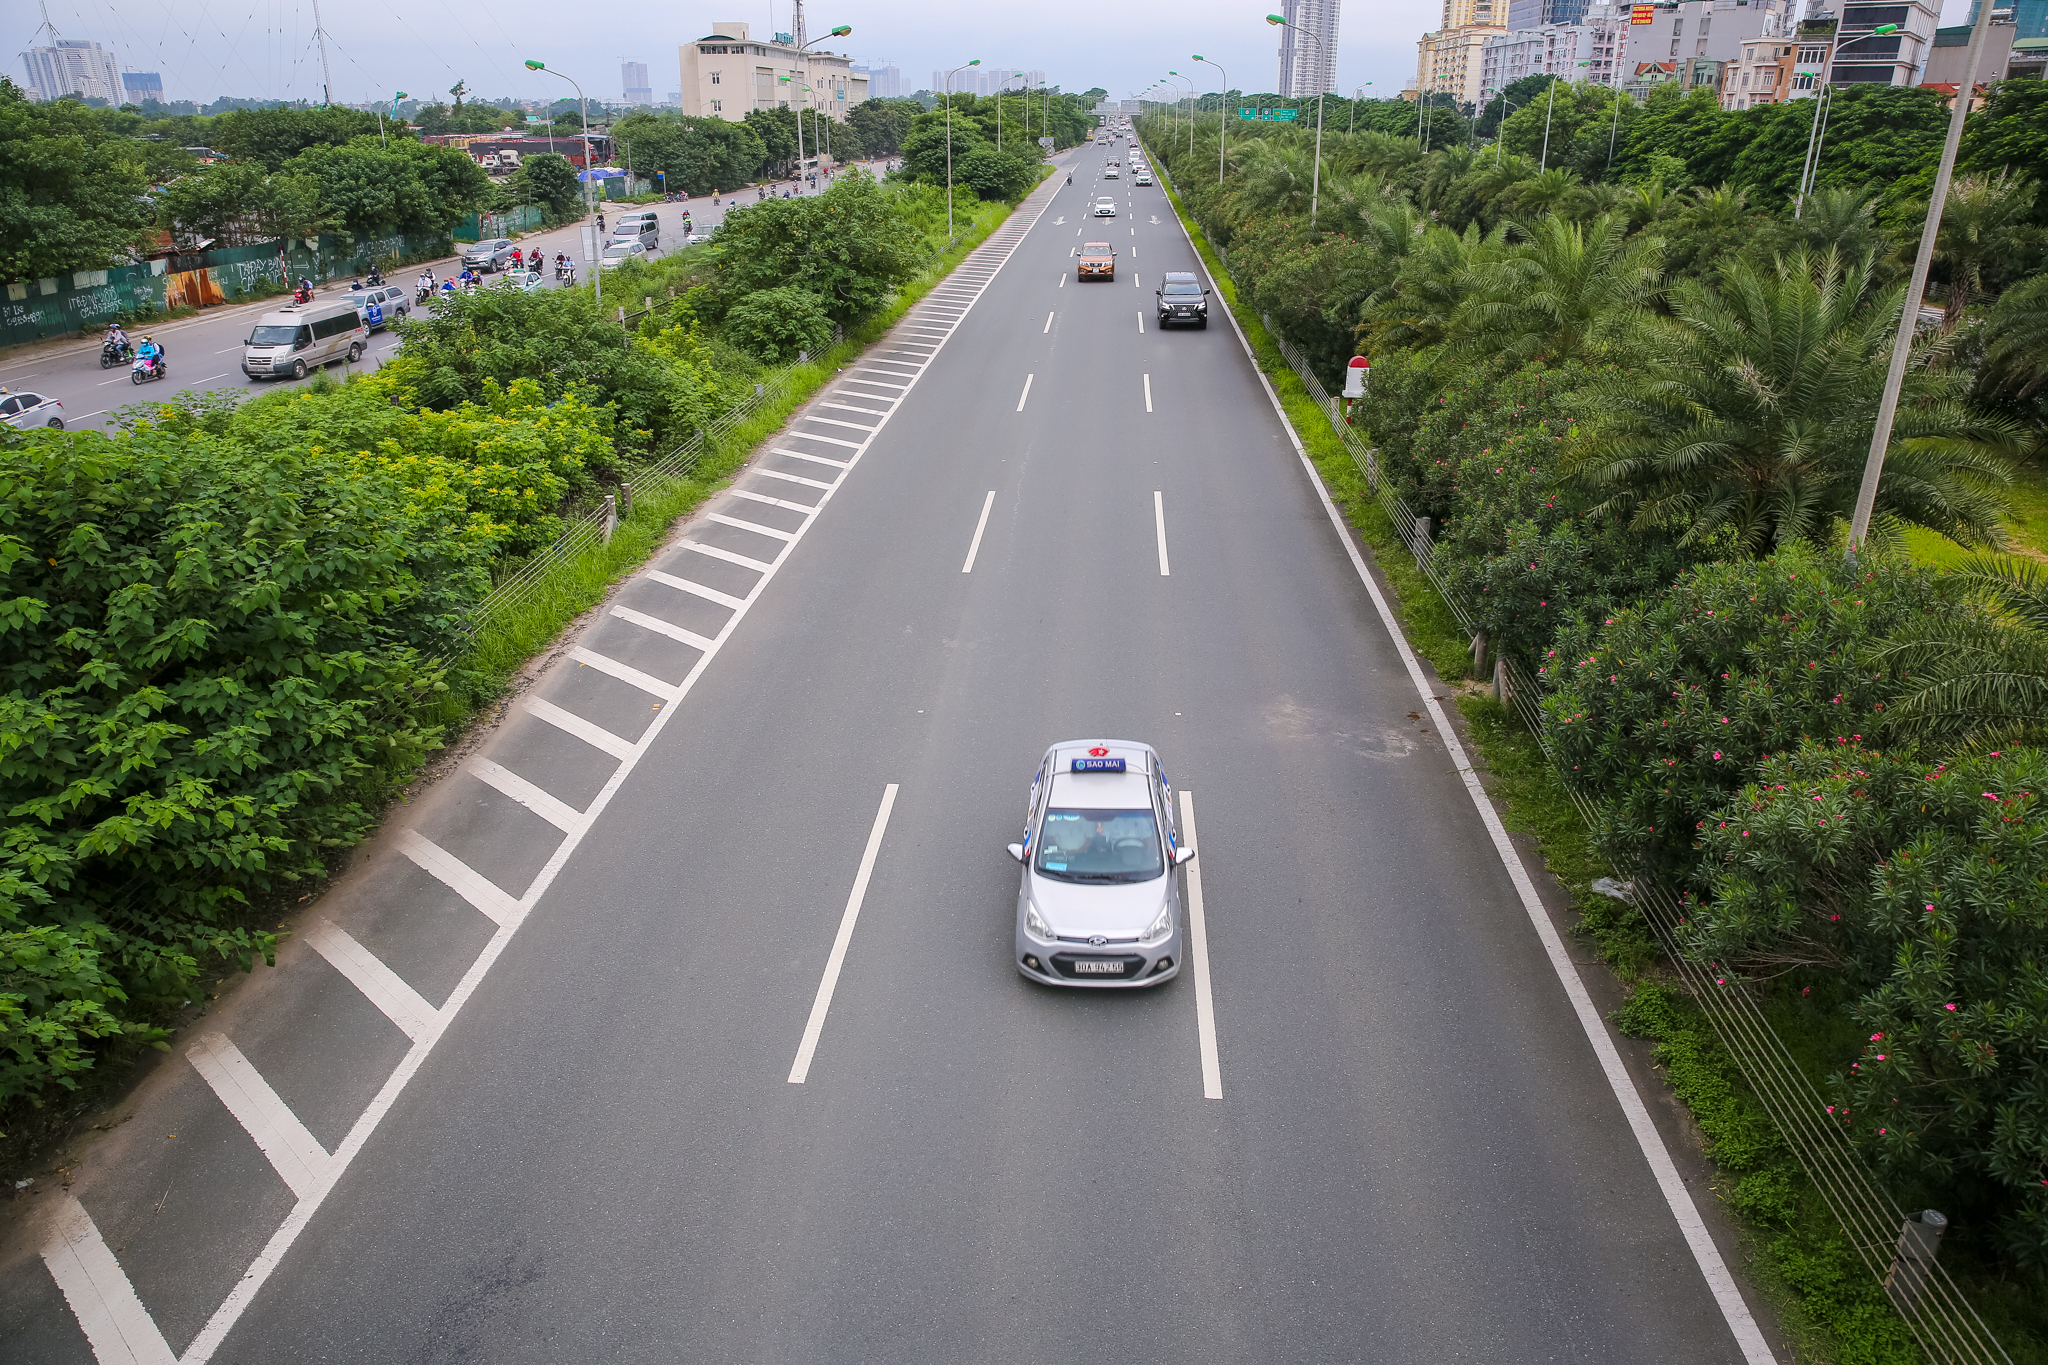 Chiều rộng tuyến đường là 140m bao gồm hai dải đường cao tốc riêng biệt quy mô 6 làn xe (rộng 16,25m); hai dải đường đô thị 2 làn xe cơ giới rộng 10,5m; dải phân cách giữa 2 đường cao tốc rộng 20m; hai dải đất dự trữ giữa hai dải đường đô thị... (Ảnh: Minh Sơn/Vietnam+)